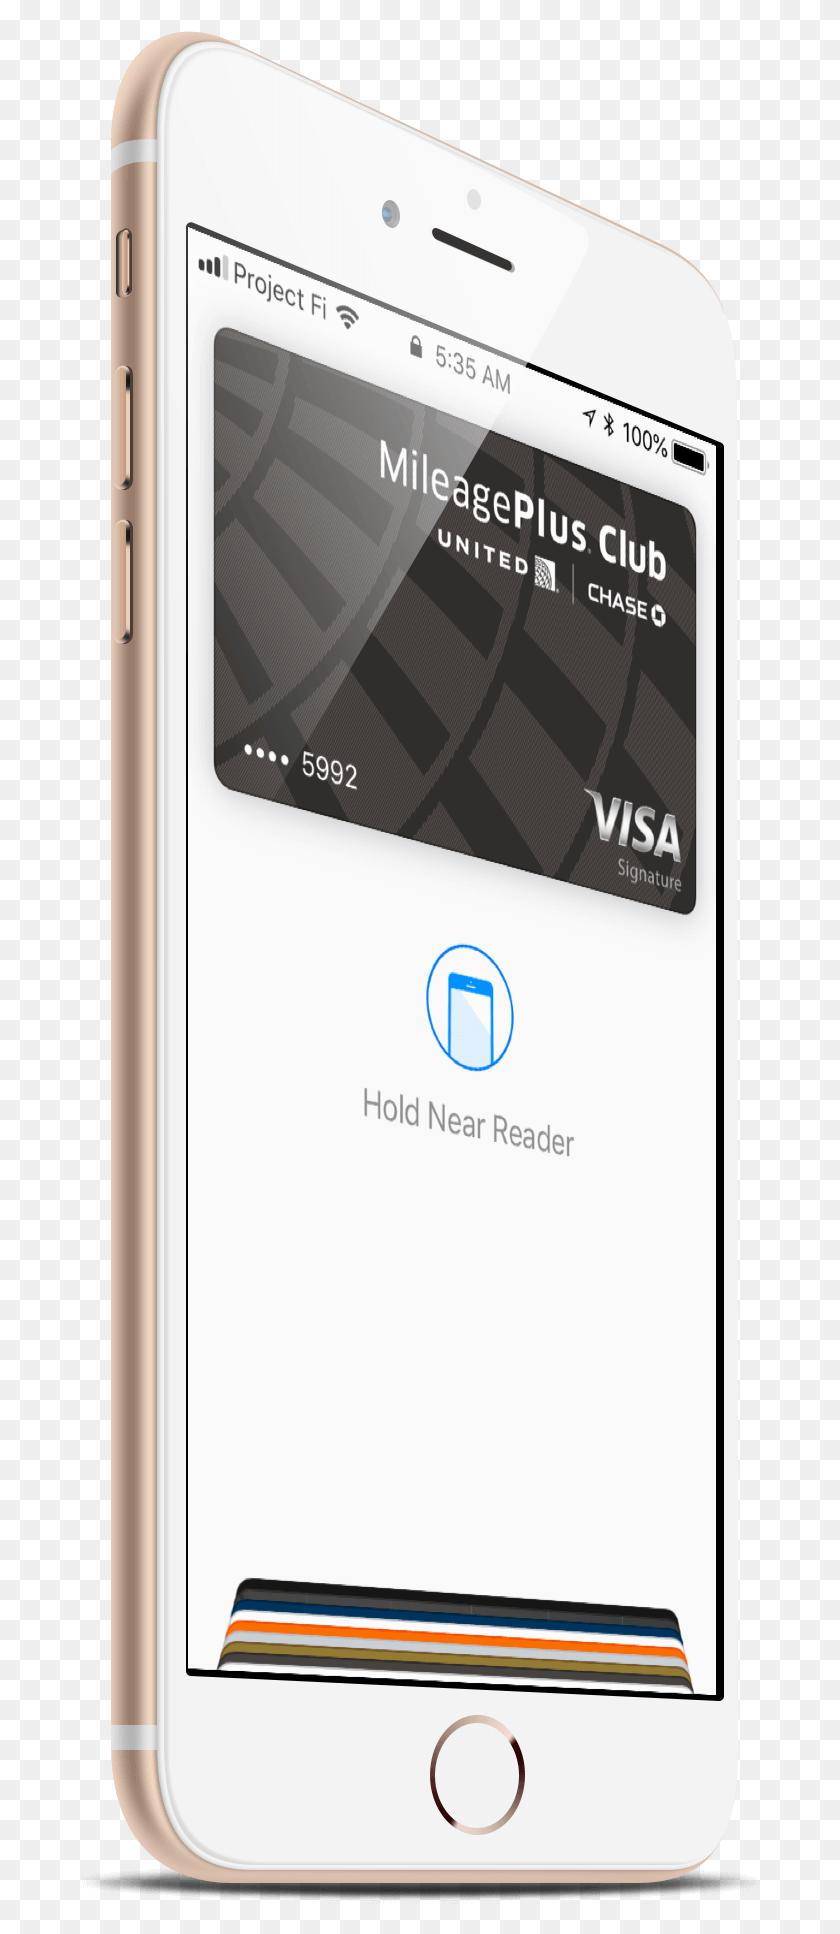 683x1874 Apple Pay Теперь Принимается В Аптеке Cvs Feature Phone, Mobile Phone, Electronics, Cell Phone Hd Png Download